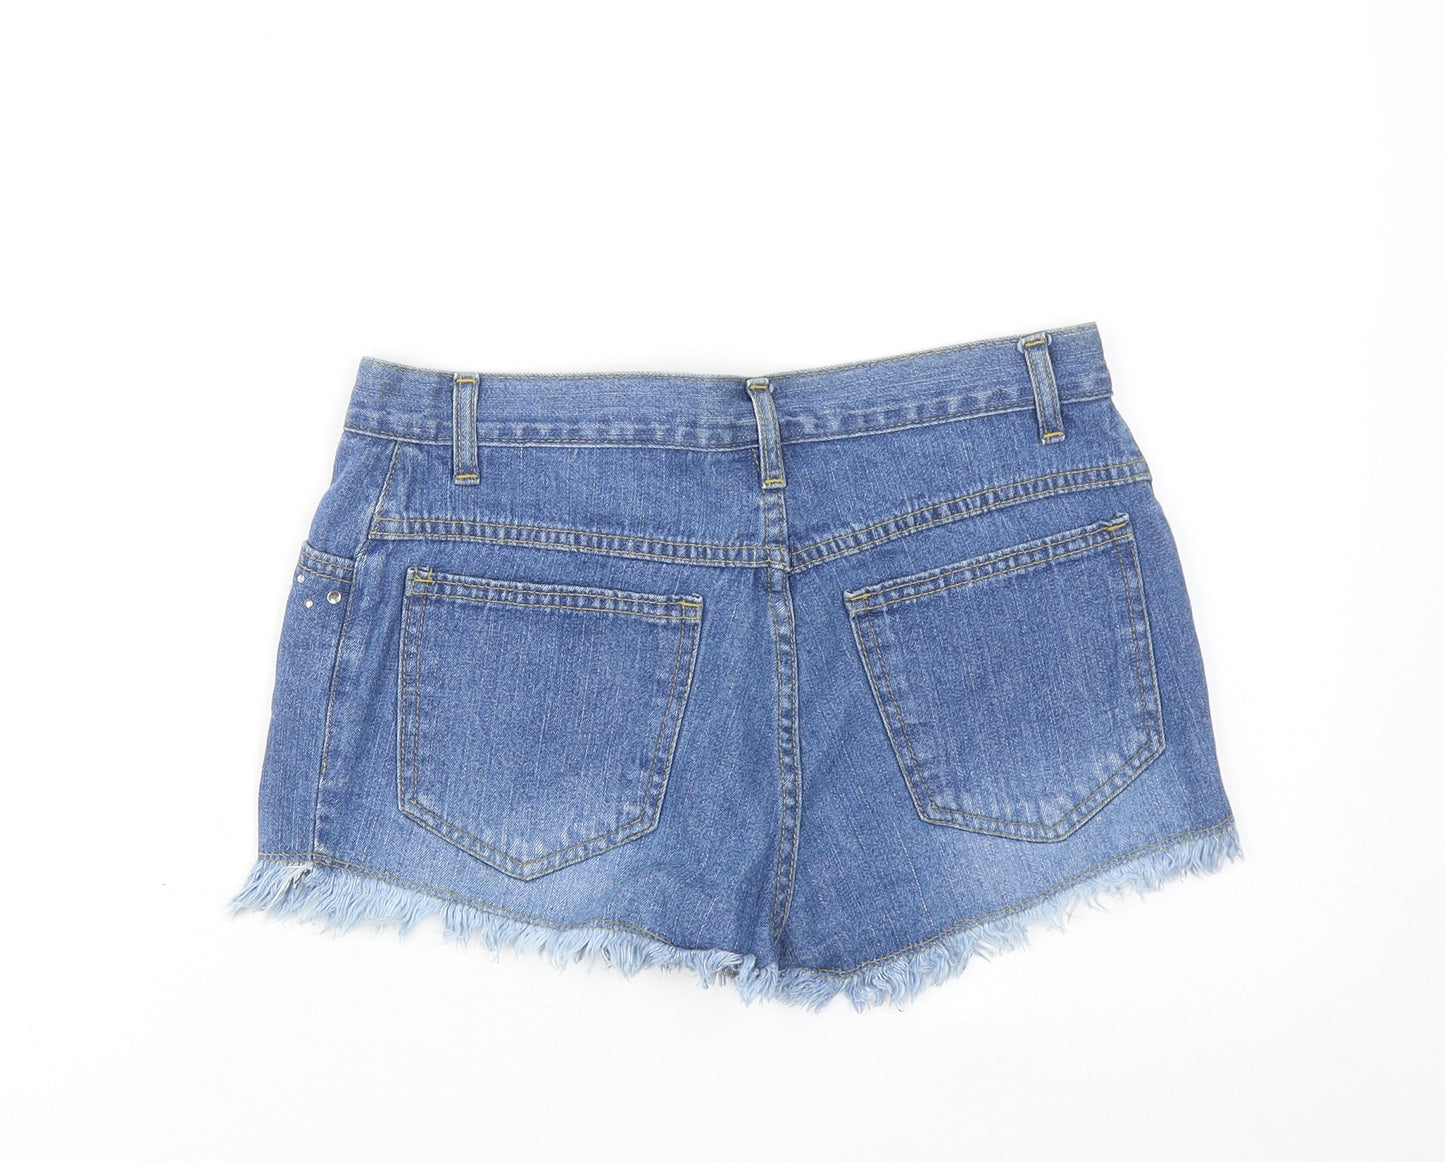 Today's Women Womens Blue Cotton Cut-Off Shorts Size 10 Regular Zip